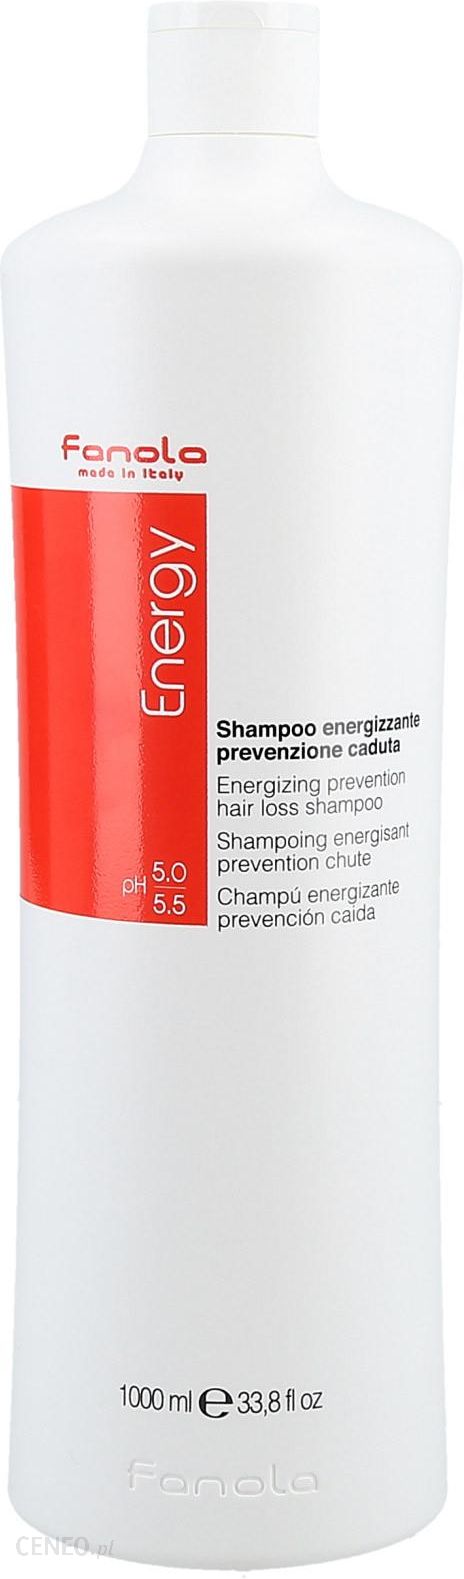 fanola energy szampon